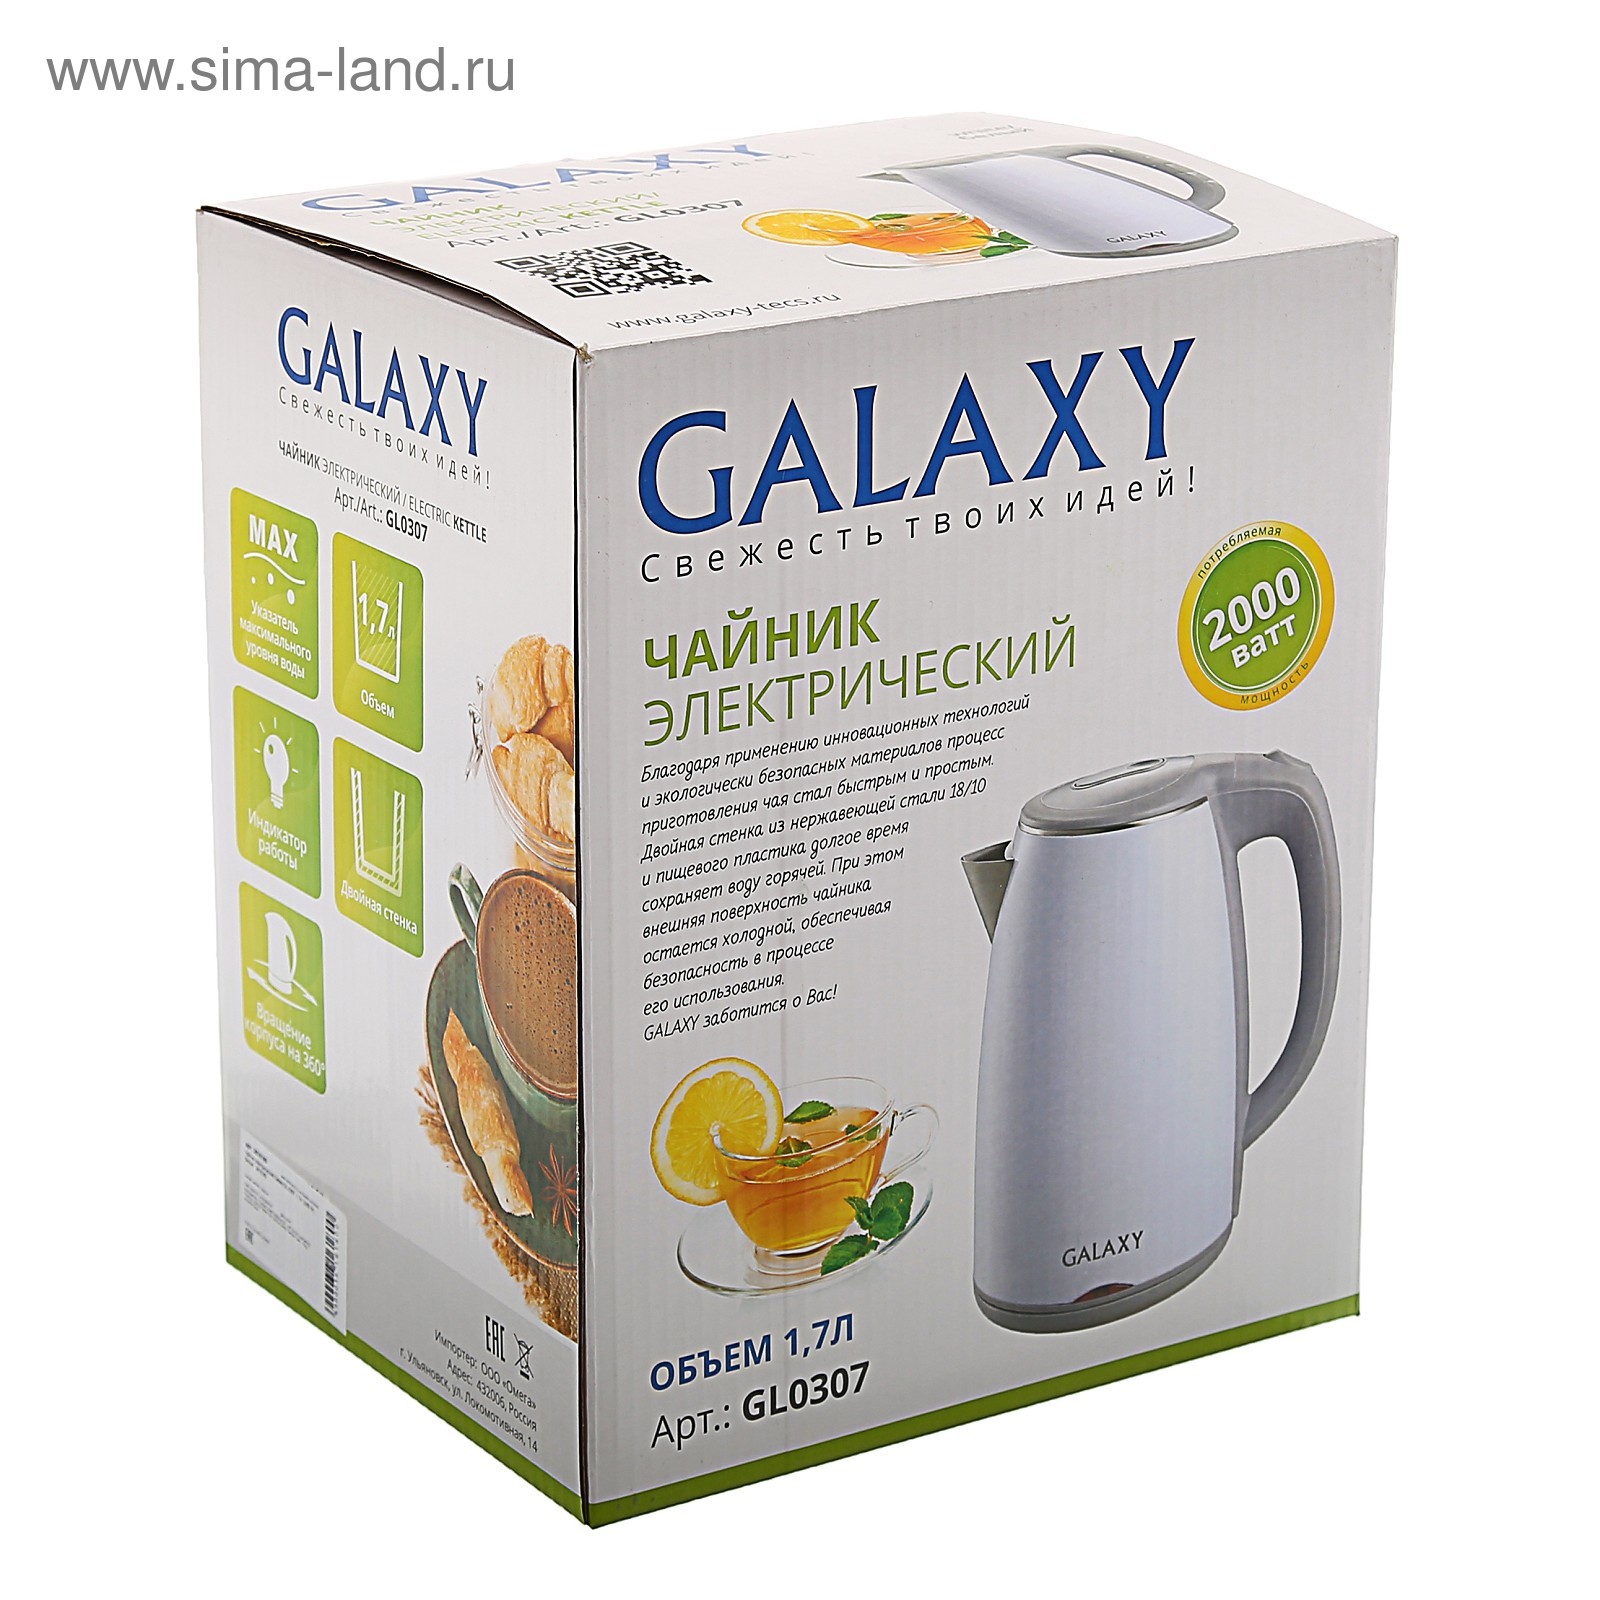 Чайник электрический Galaxy GL 0307 Green - купить чайник электрический GL 0307 Green по выгодной цене в интернет-магазине